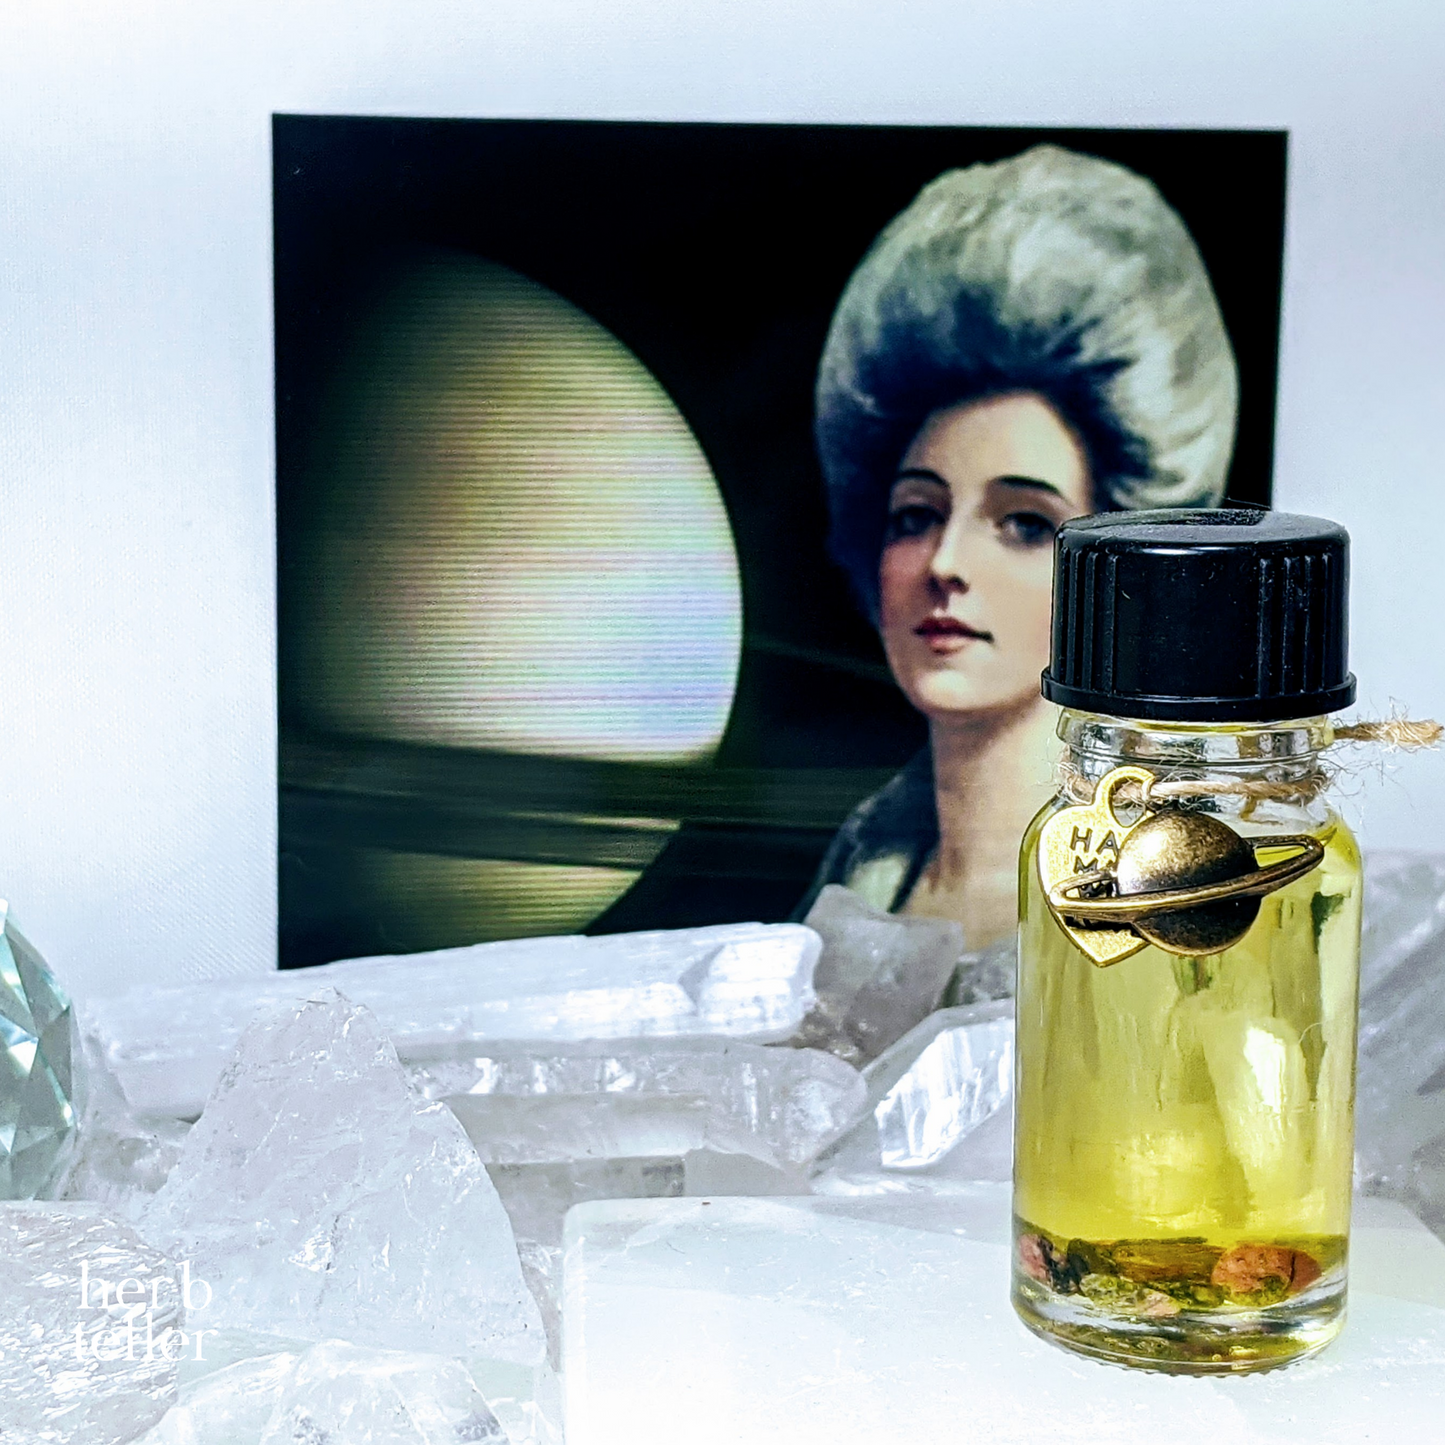 Oh My Saturn Oil (Herbal Perfume/Oil)